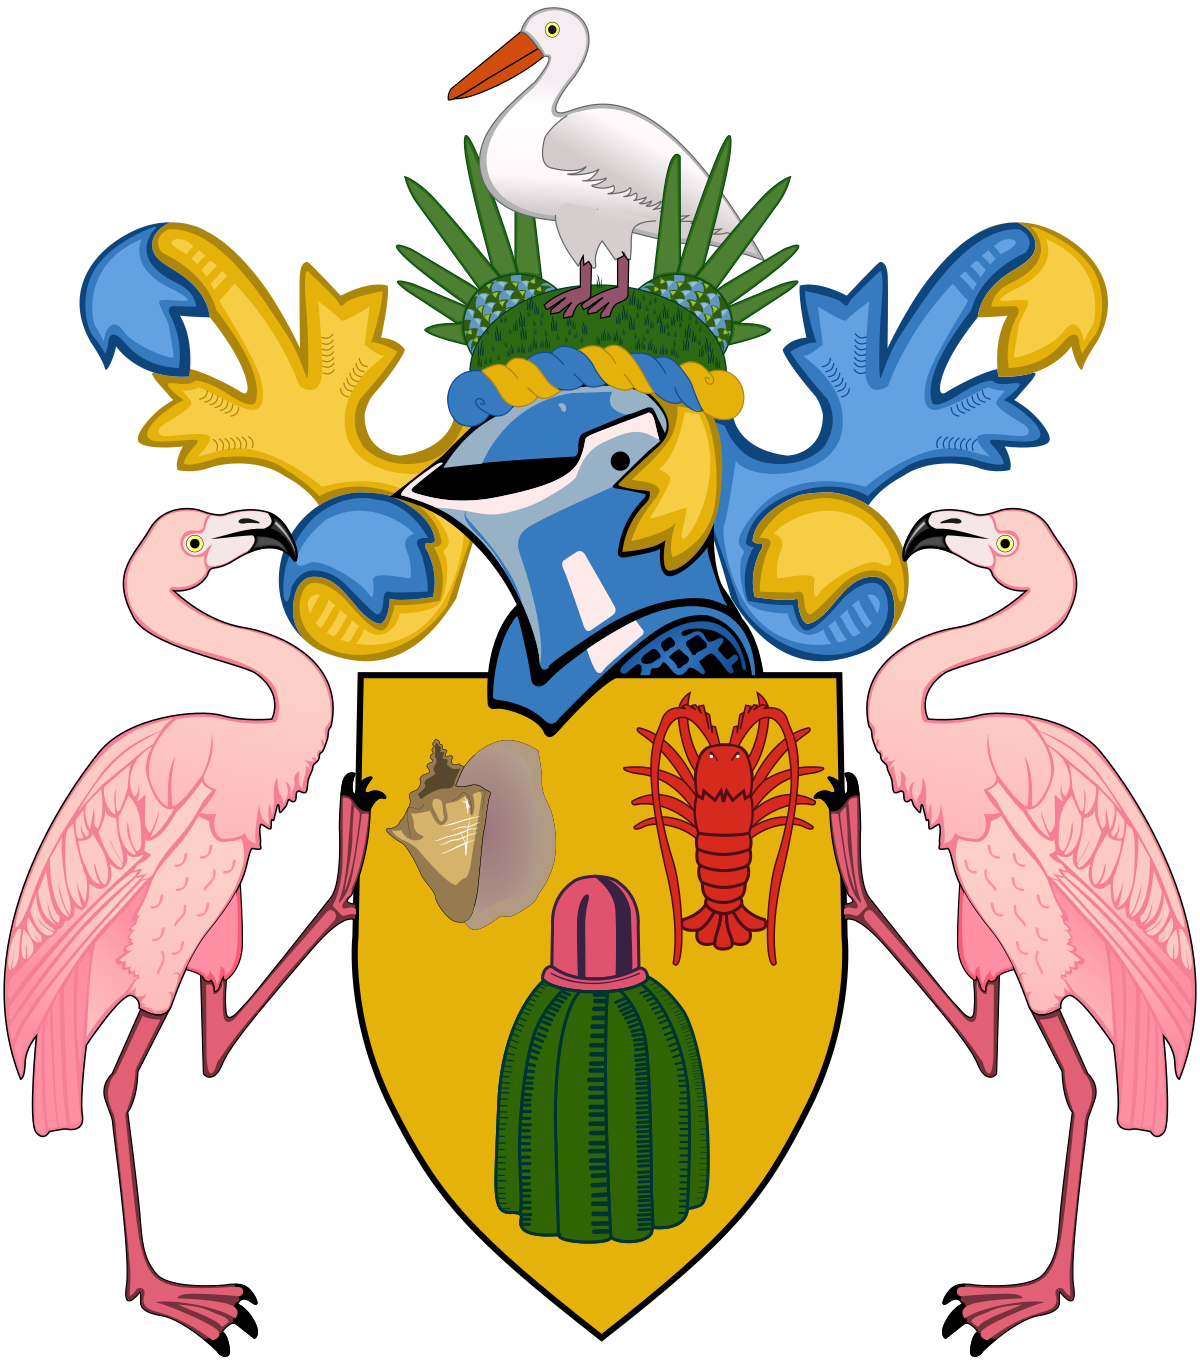 Turks and Caicos Islands Government logo